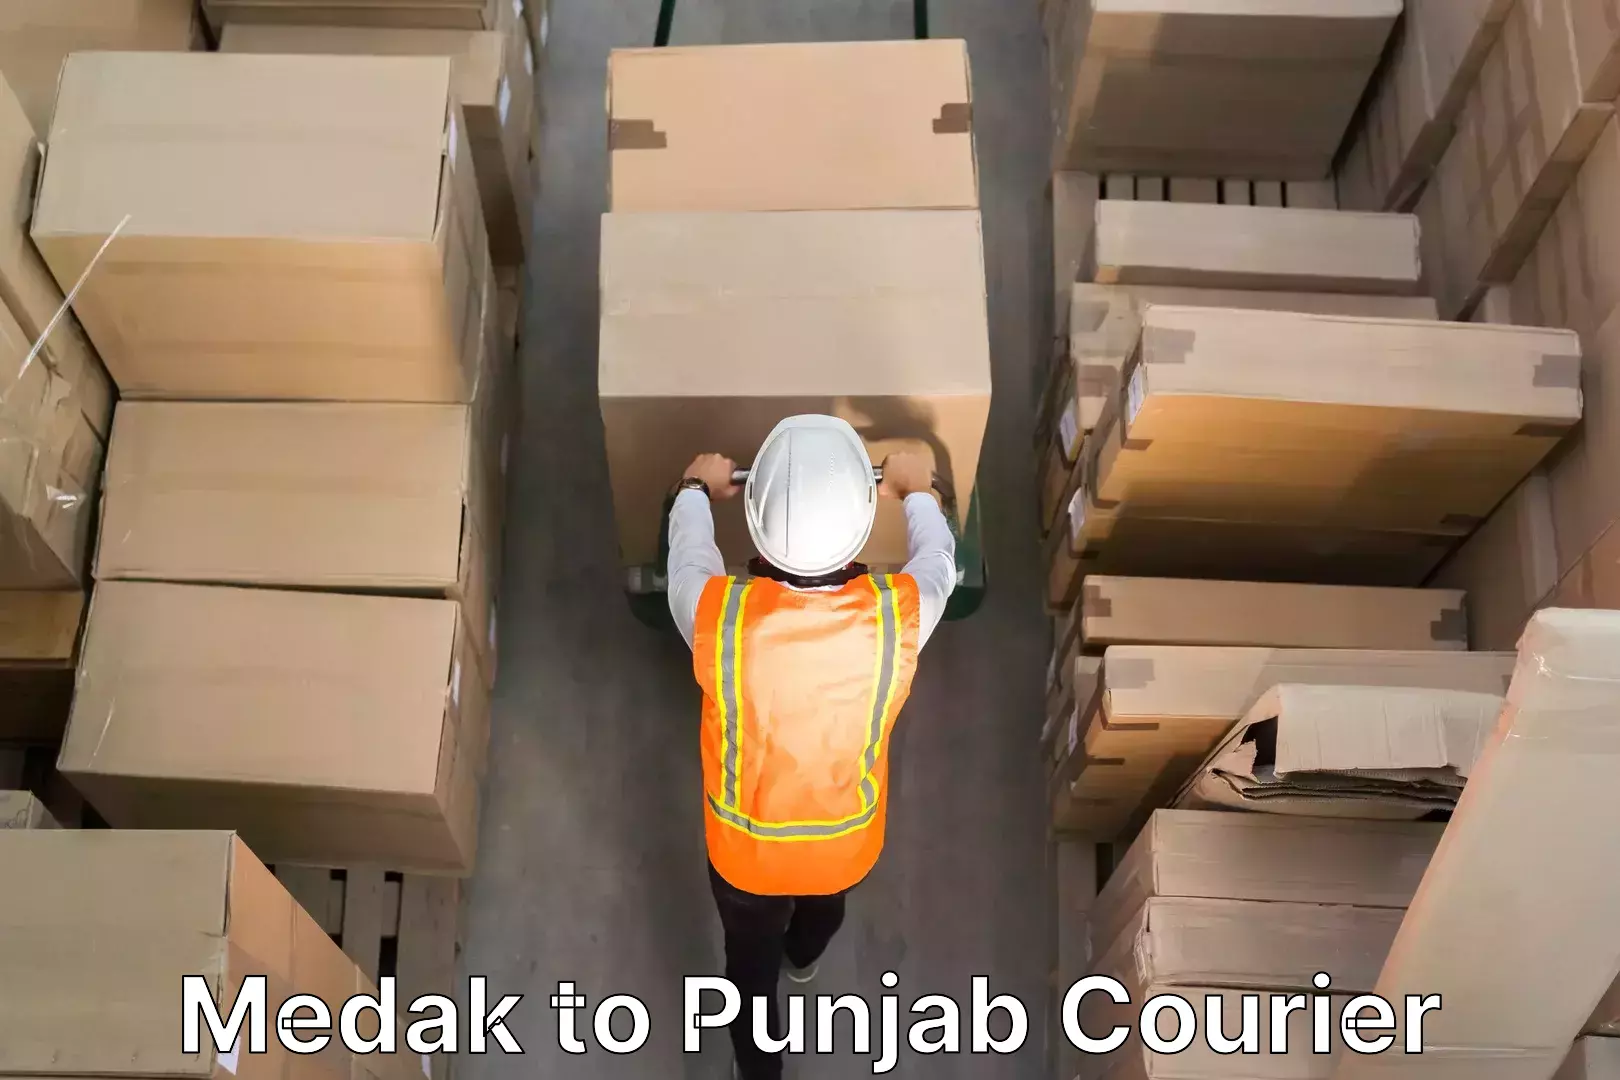 Stress-free household moving Medak to Punjab